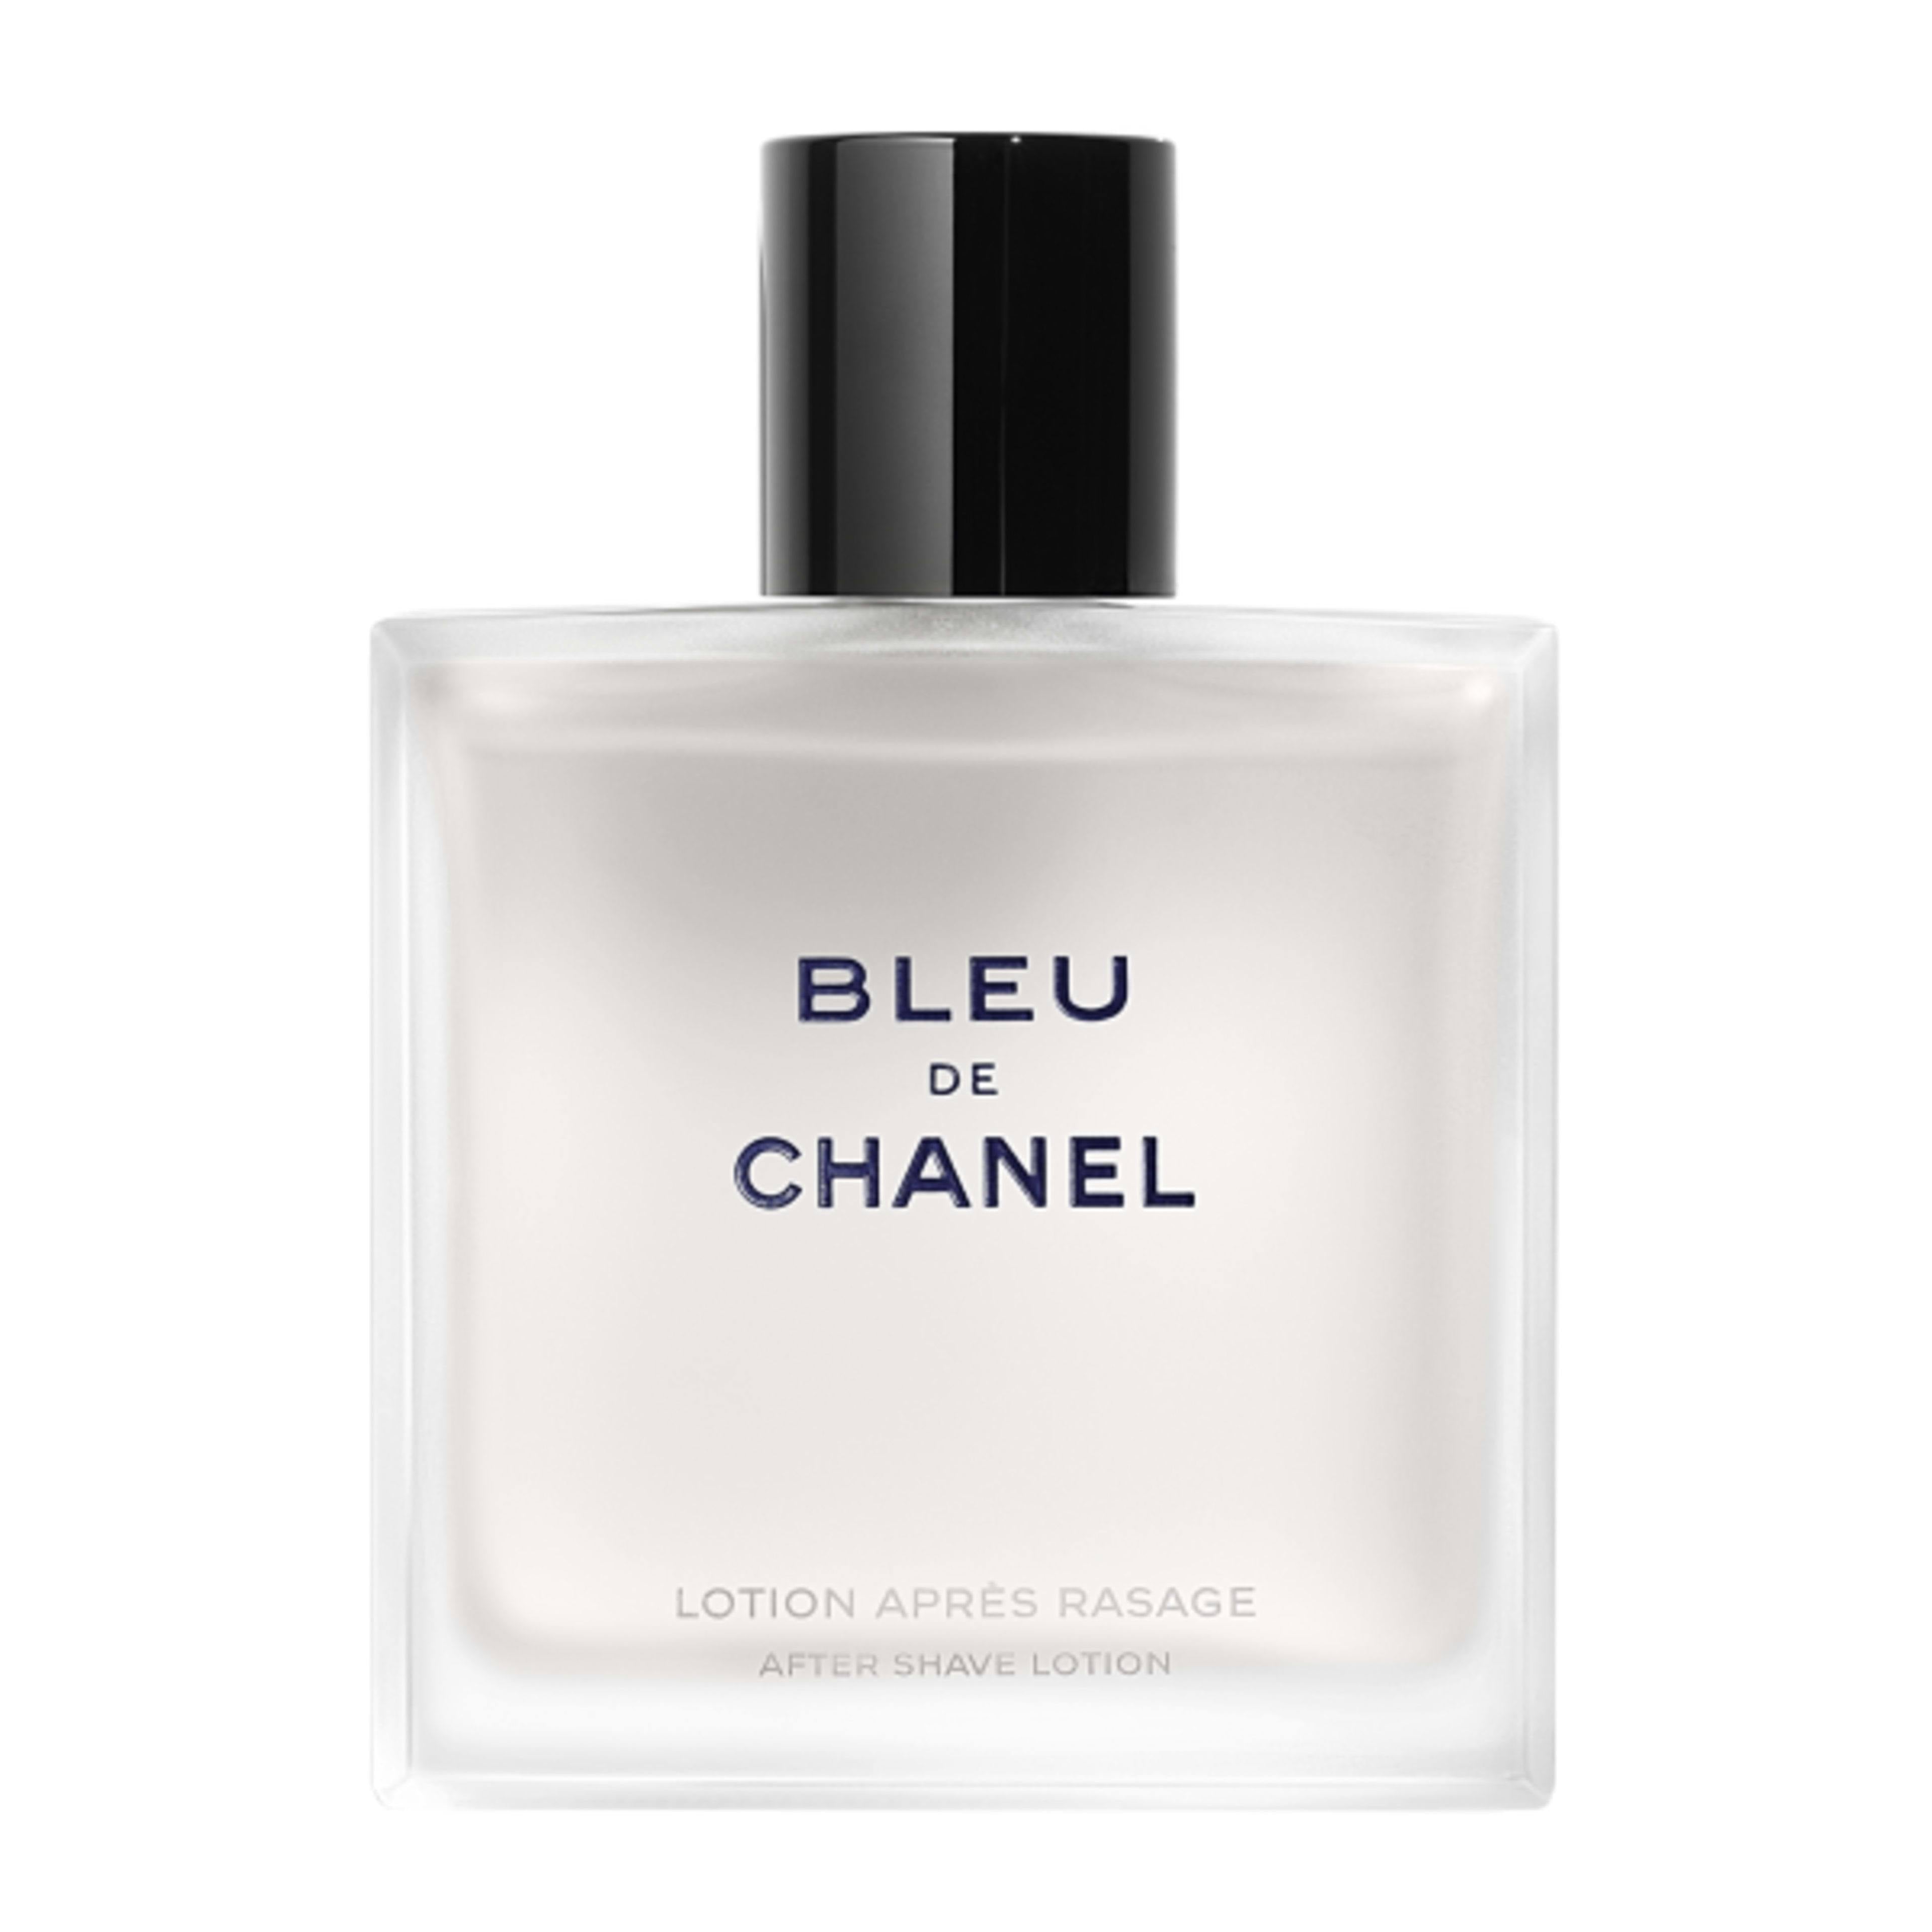 รีวิว Chanel Bleu de Chanel ความหอมที่ใครก็อยากสัมผัส, Gallery posted by  pagetamjaifan